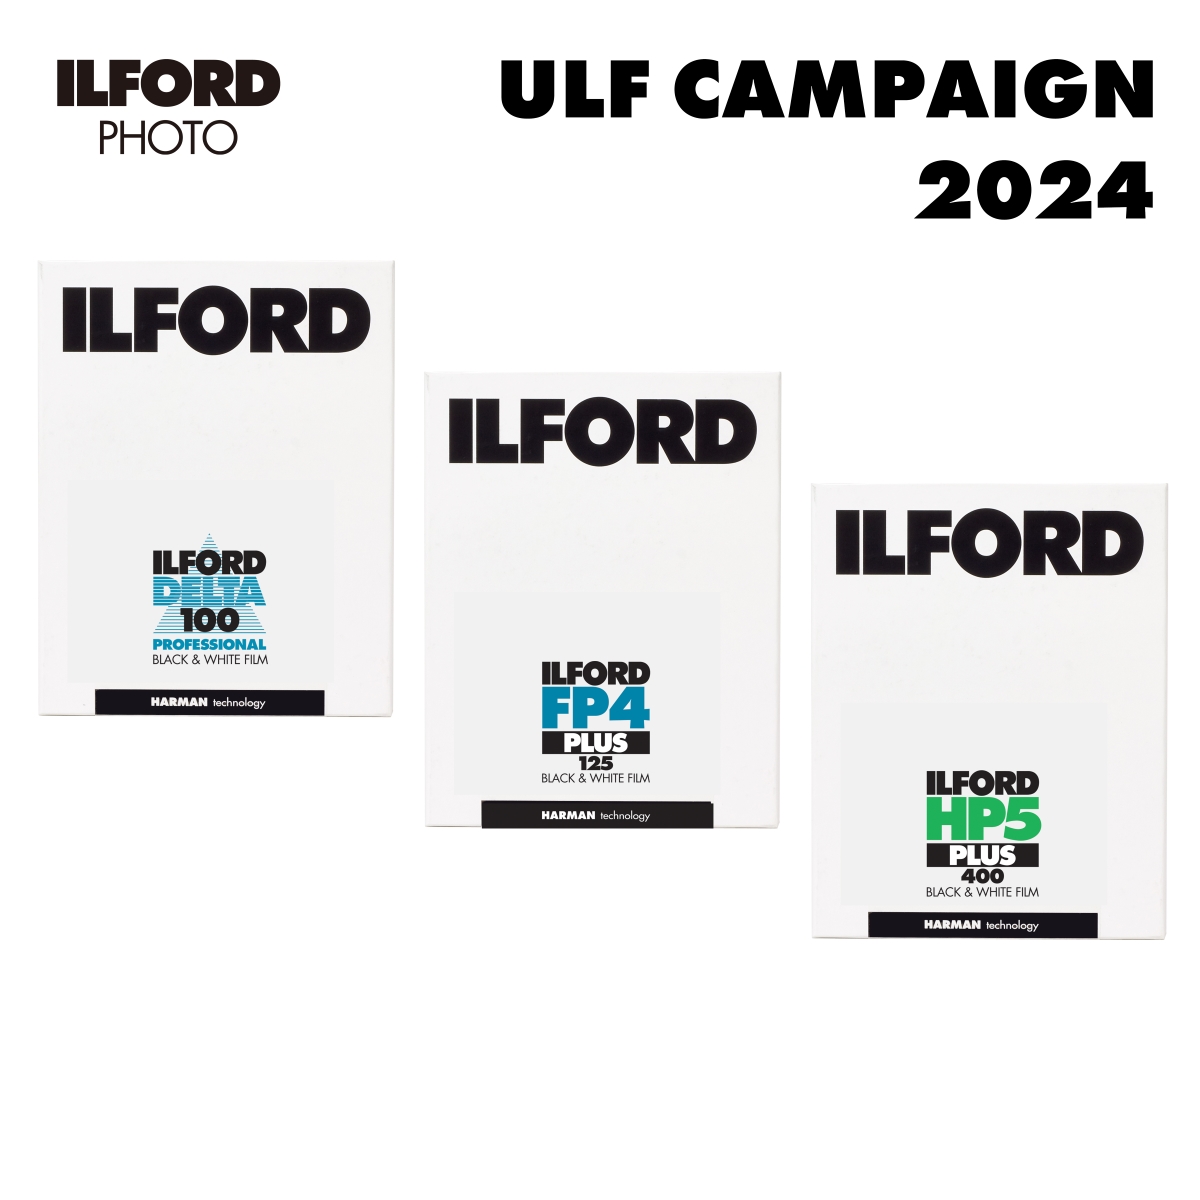 🎞️「ULF Campaign2024」開催のお知らせ✨

今年もULF (Ultra Large Format) キャンペーンが開催されます。イルフォードBW製品に関するイベントの中でも、特に人気のあるキャンペーンです。
お見逃しなく！

詳細はこちらから💁‍♂️
●ULFキャンペーン特設ページ ilford.co.jp/photo/post-153…